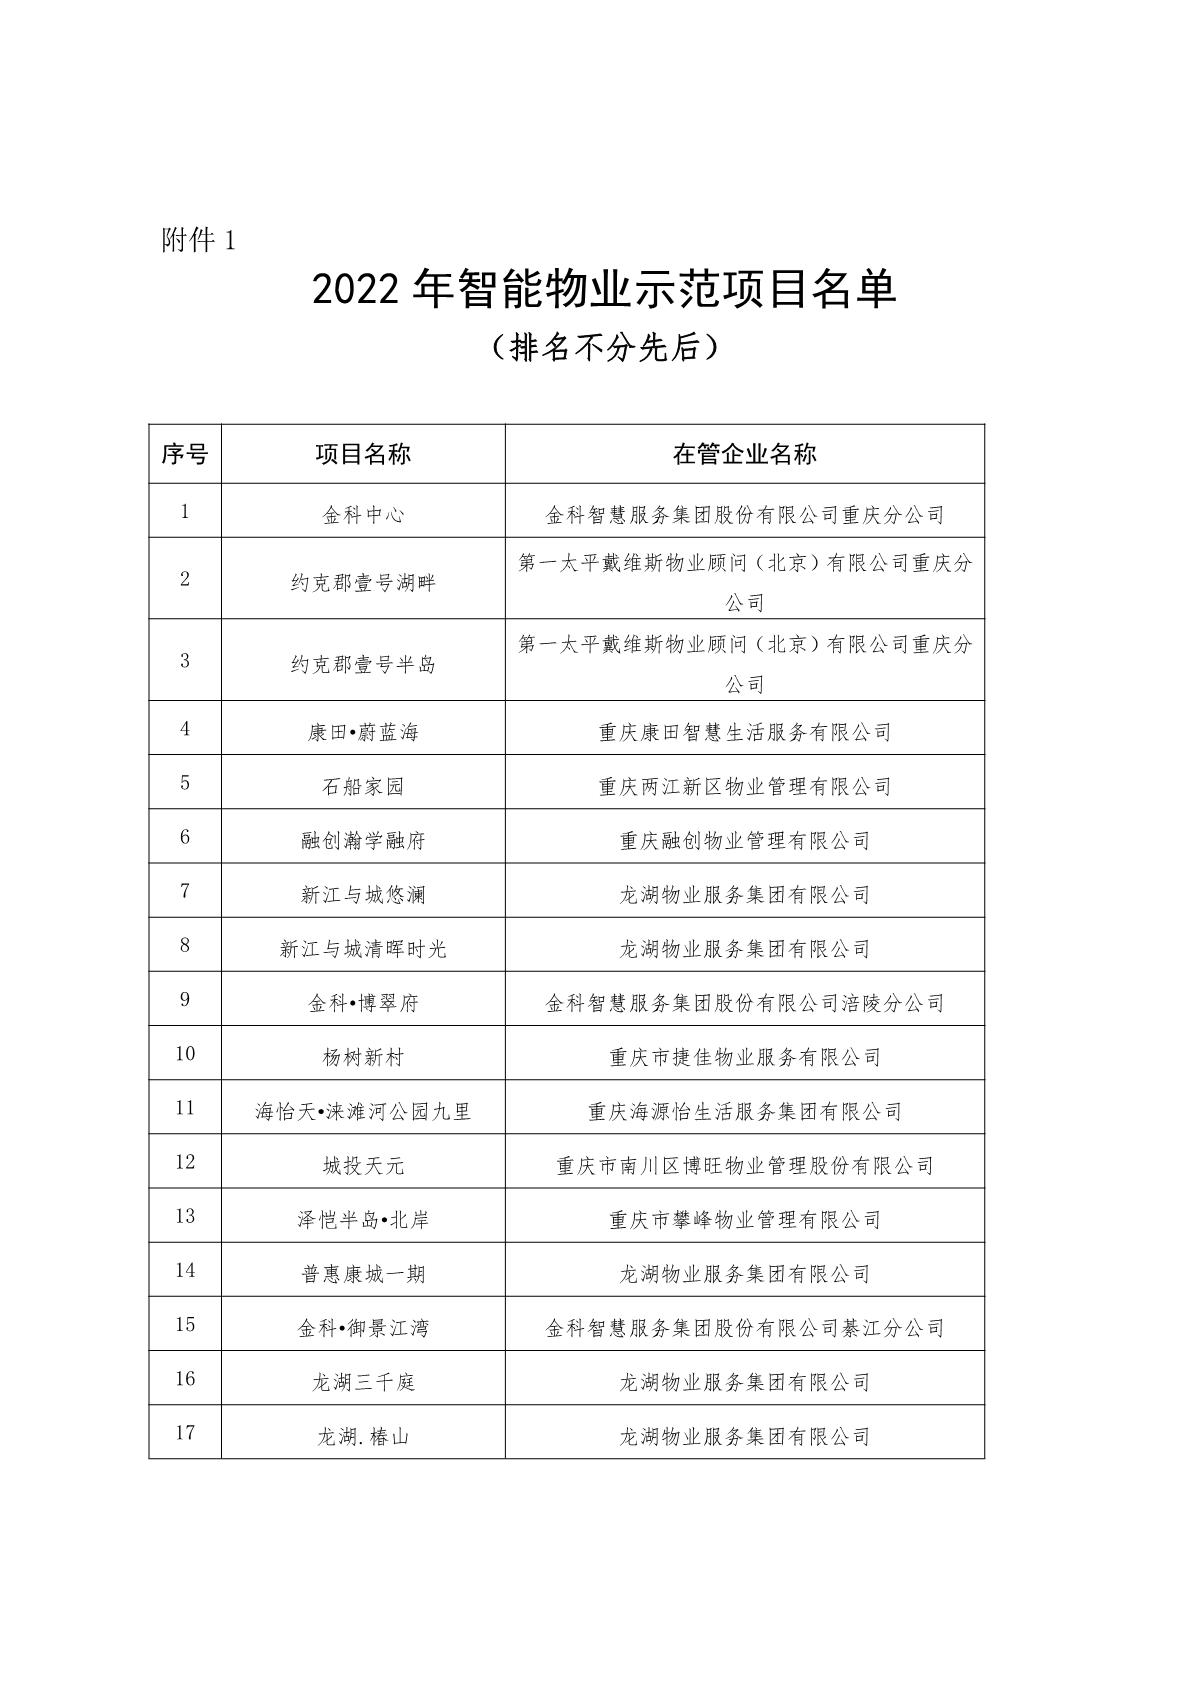 渝物协[2023]2号重庆市物业管理协会关于表彰2022年智能物业项目的通报_3.JPG